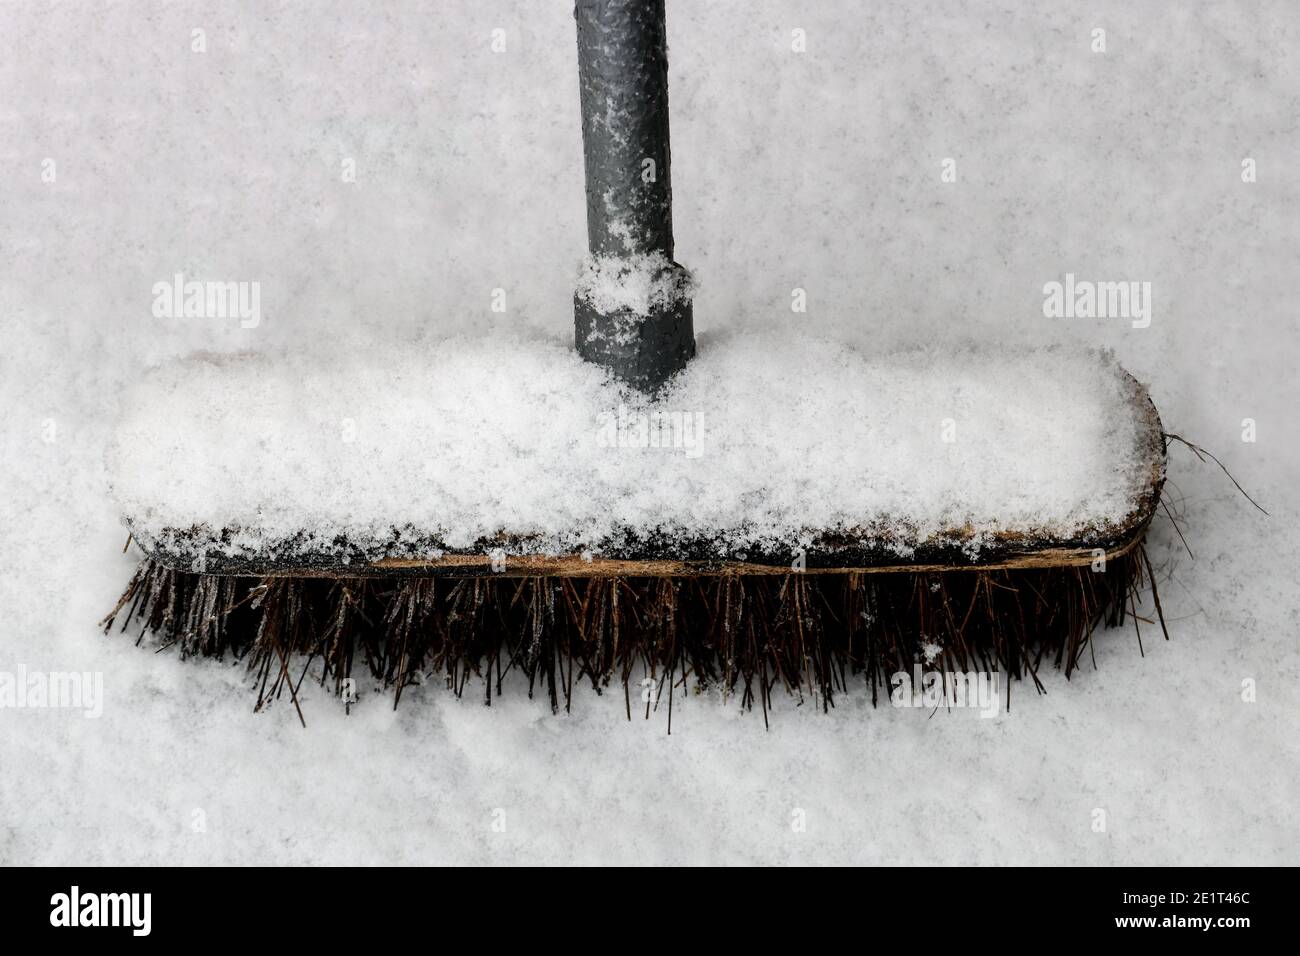 Besen Auf Dem Schnee Im Winter Stockbild - Bild von reinigung